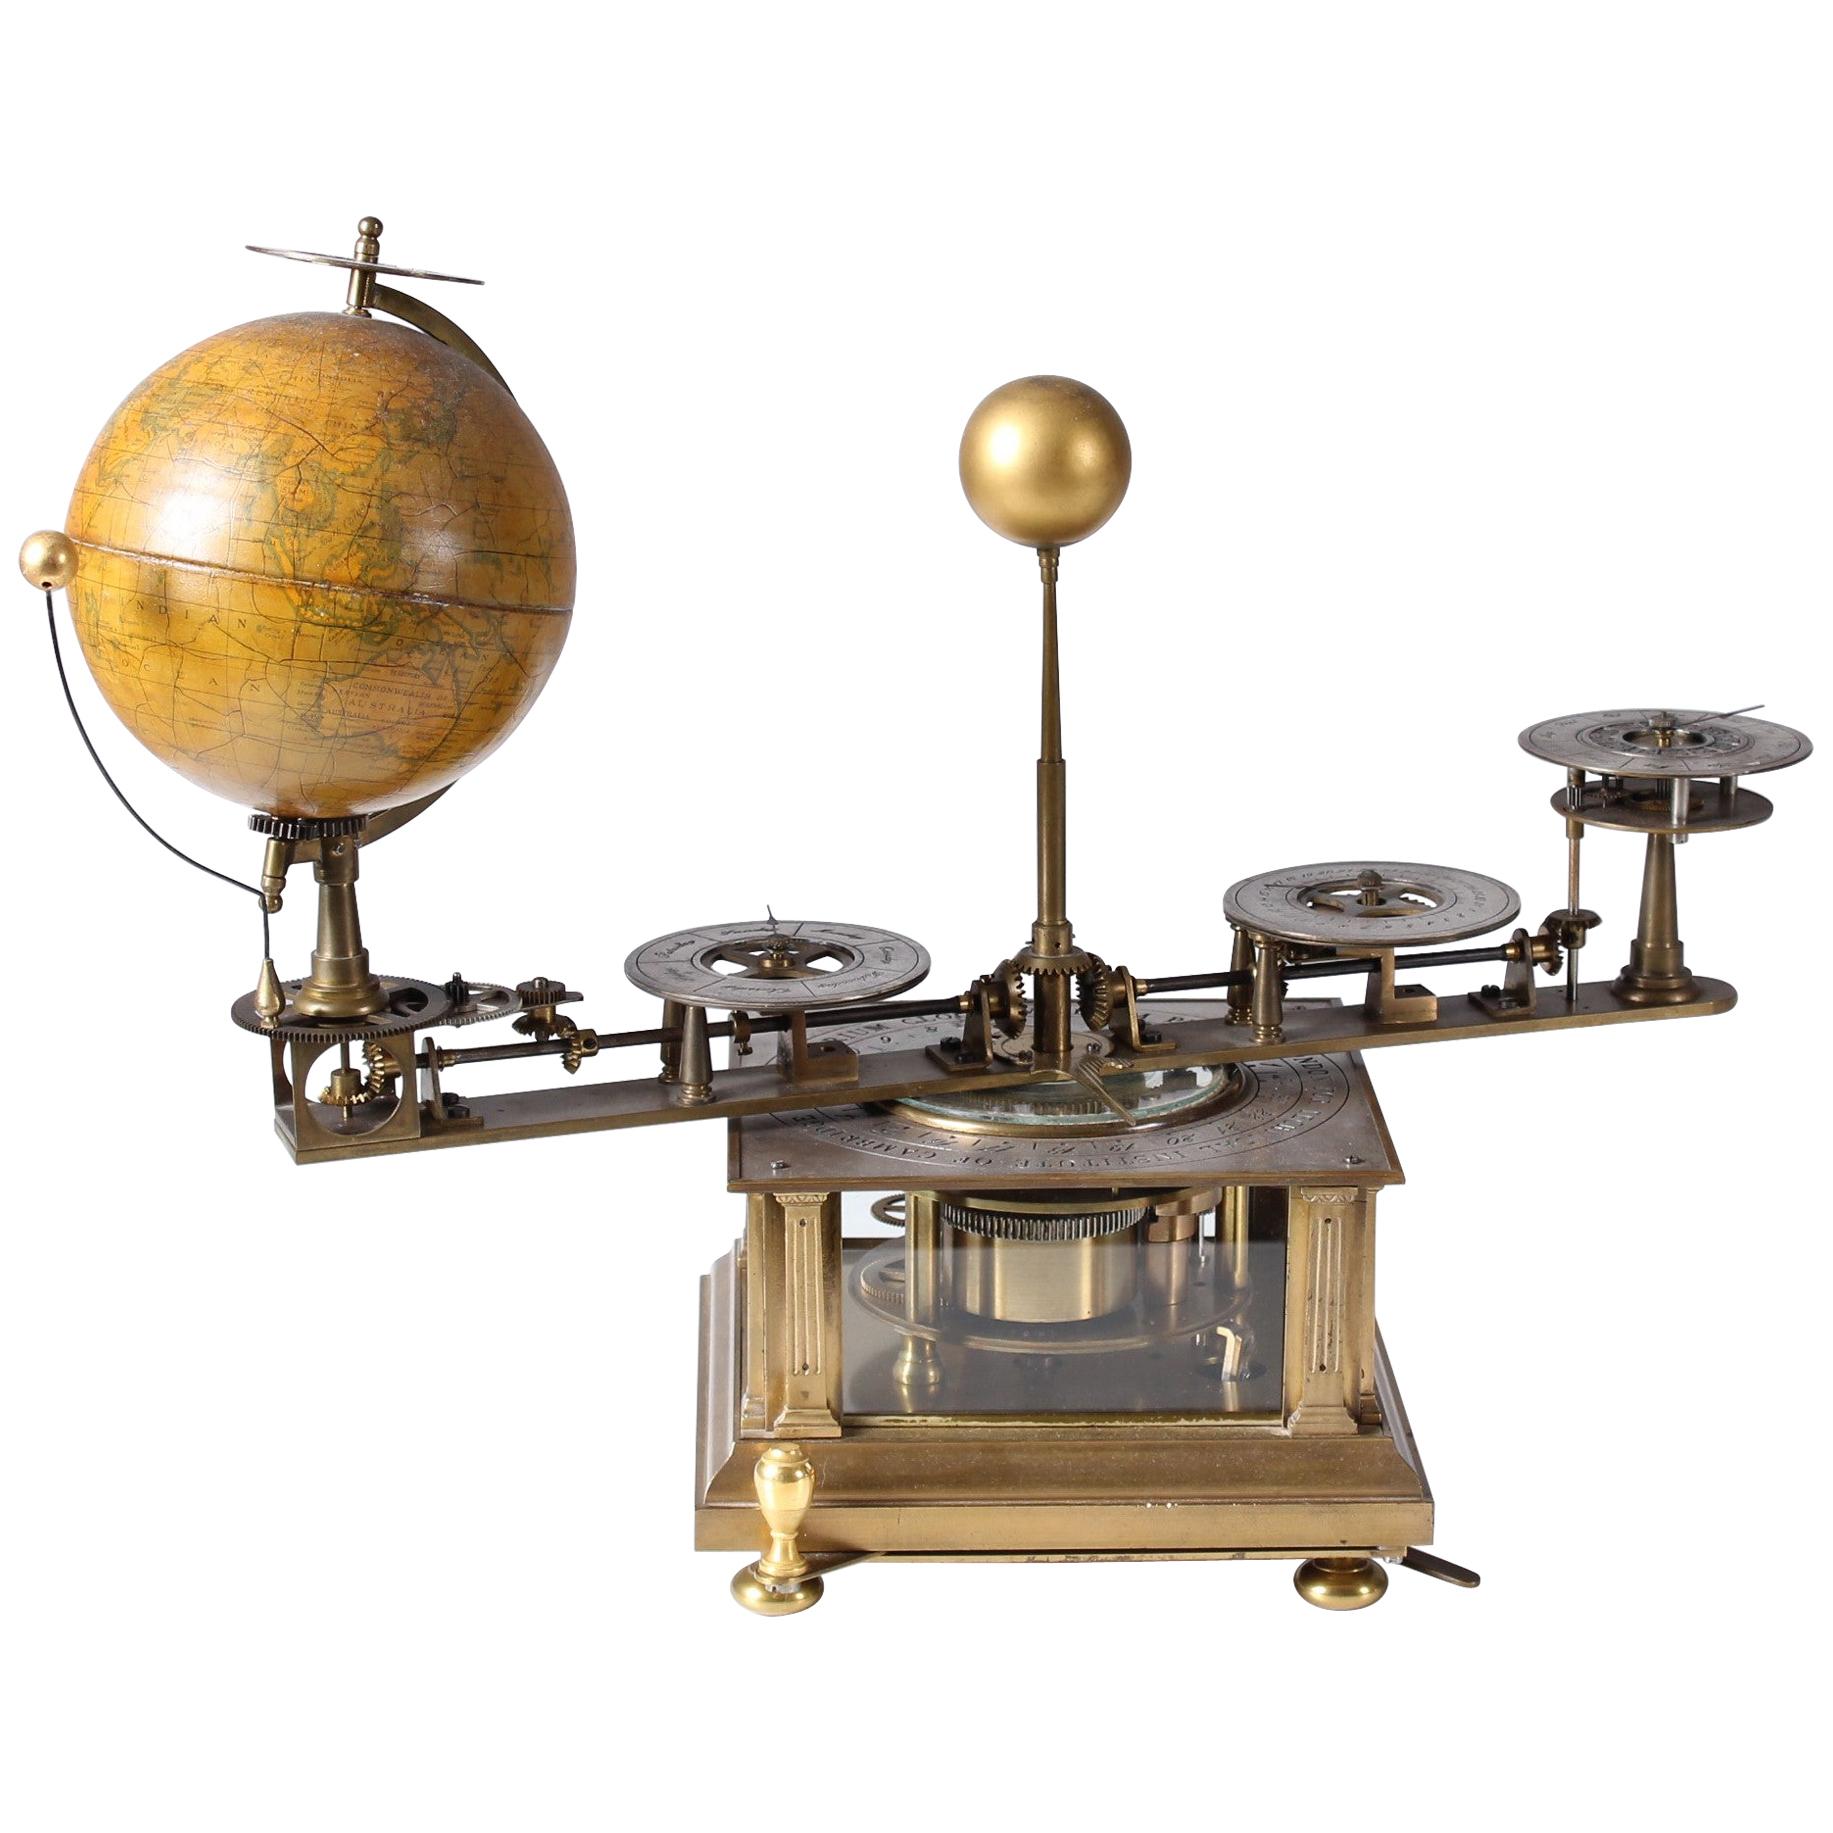 VIDEO* Planetarium, Tellurium Clock with Rotating Globe, London, Cambridge, 1925